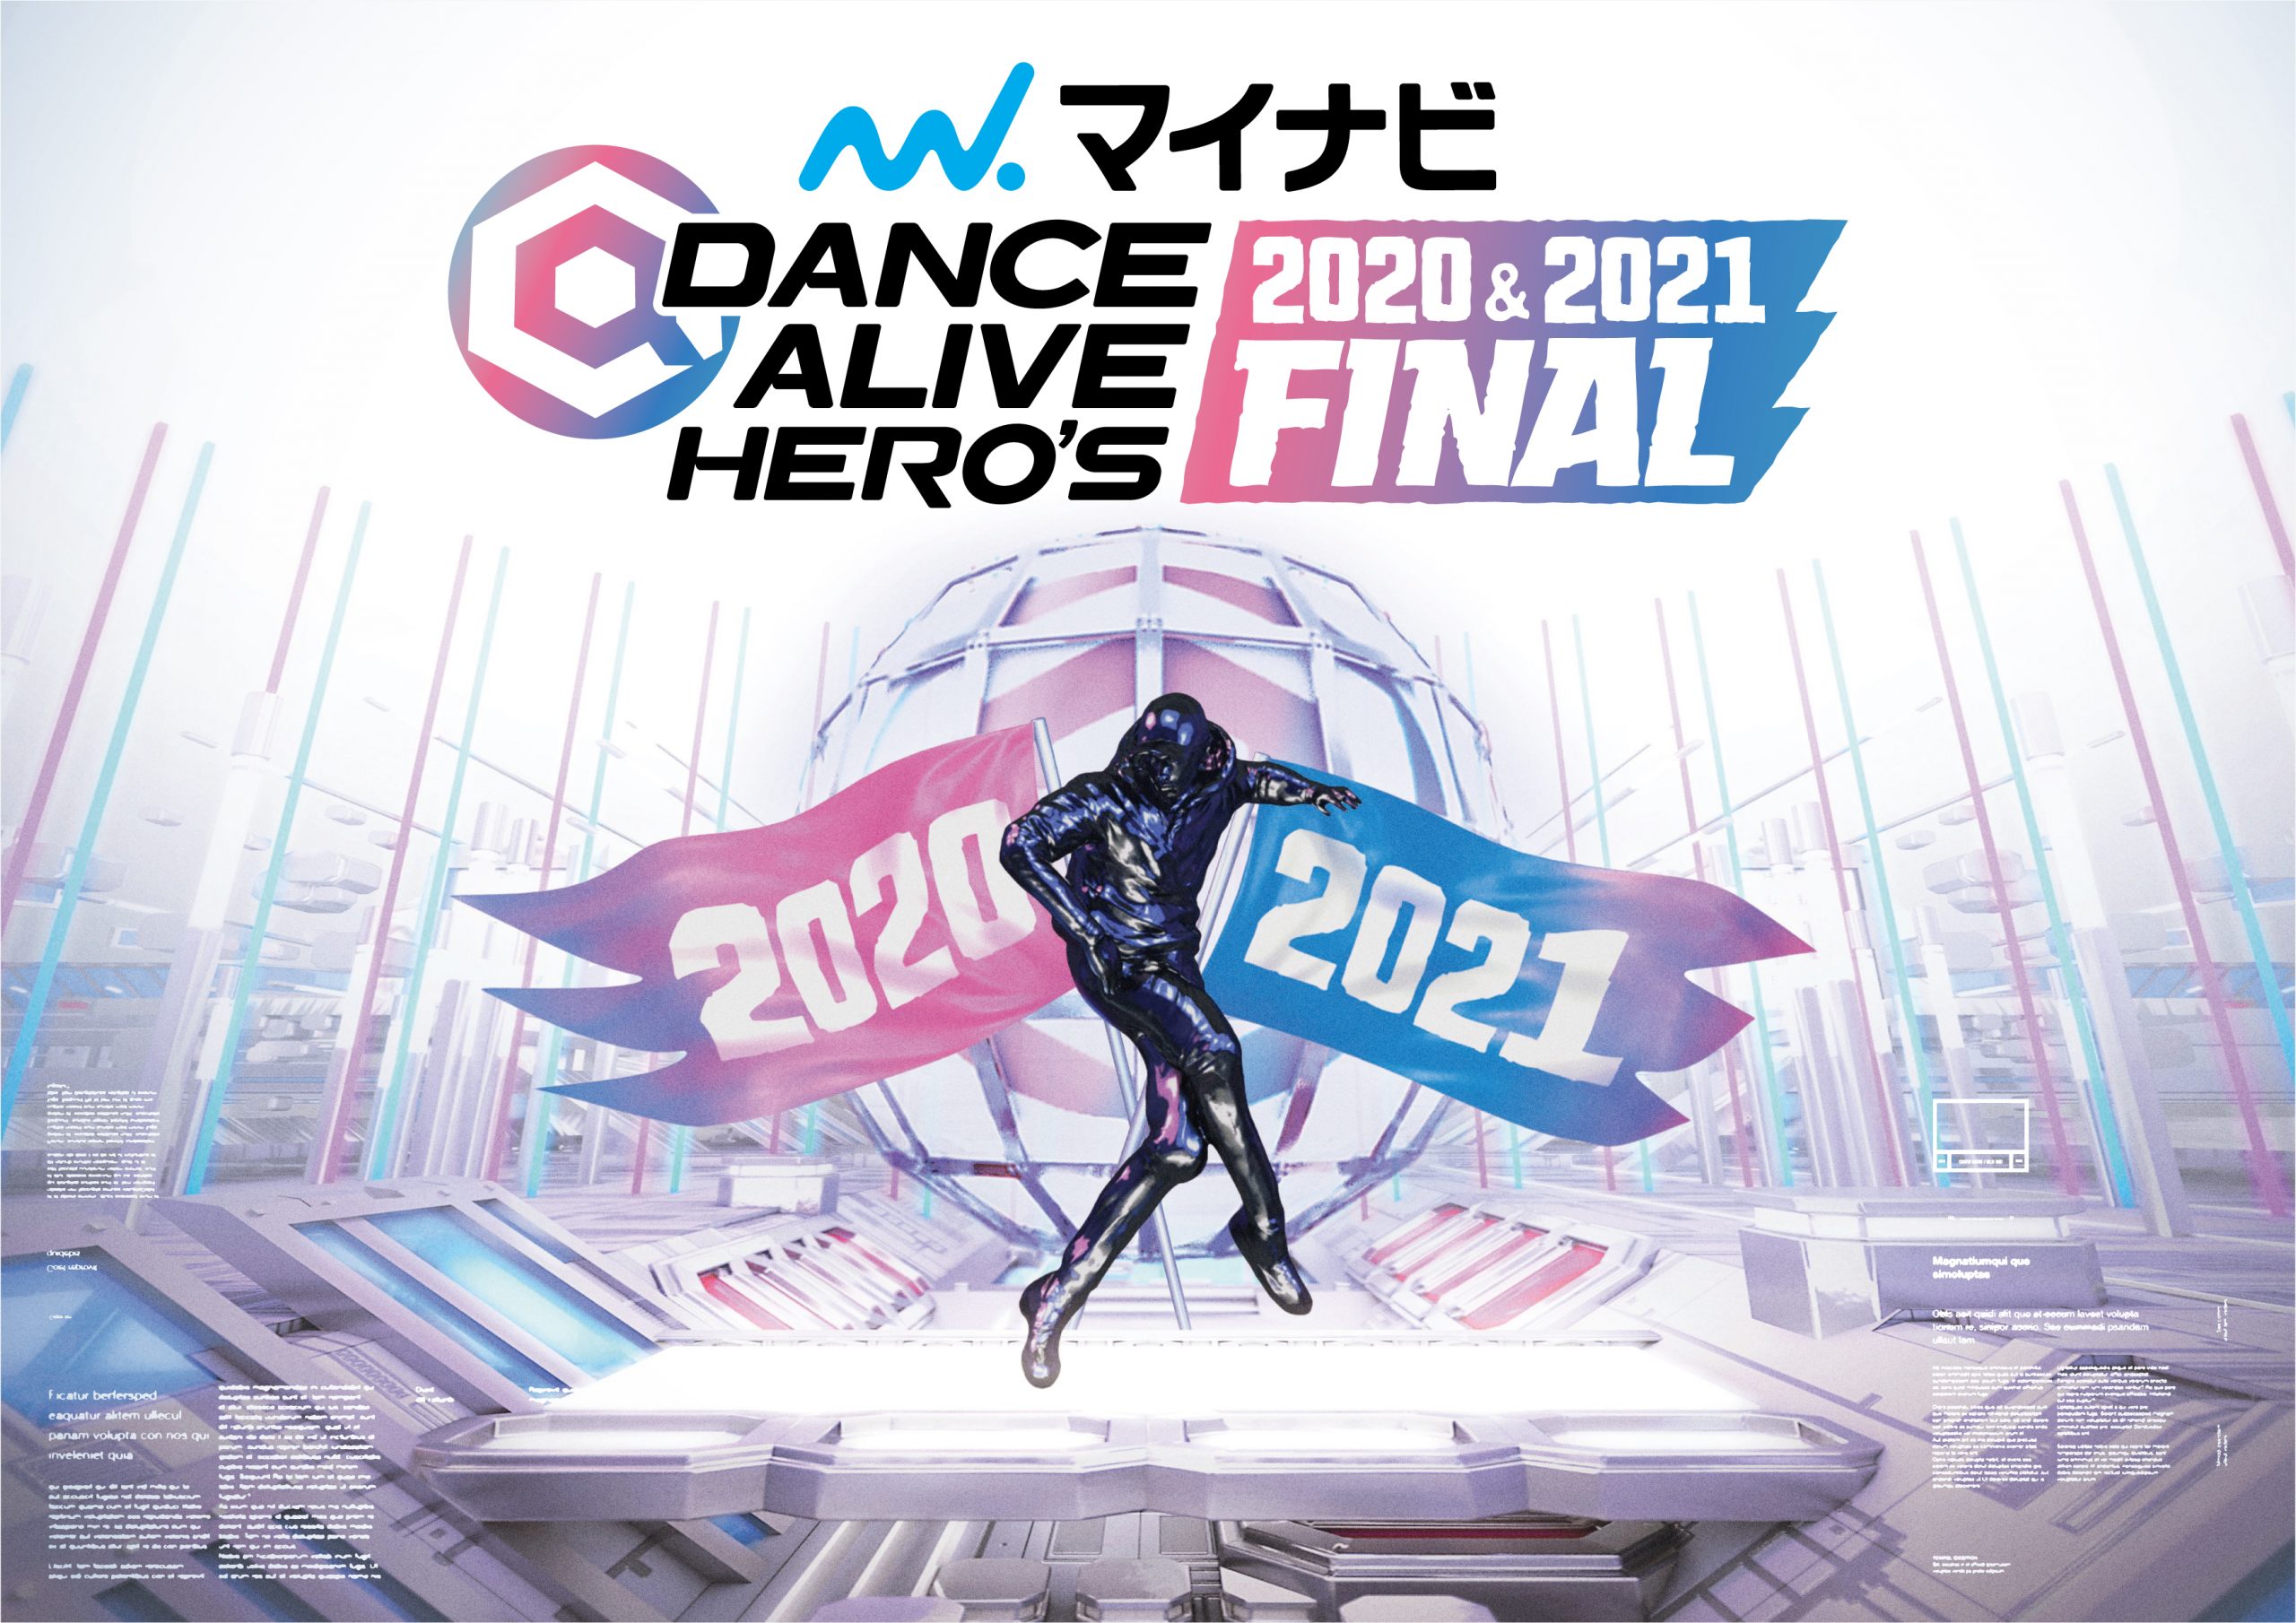 マイナビDANCE ALIVE HERO’S 2020&2021 FINAL